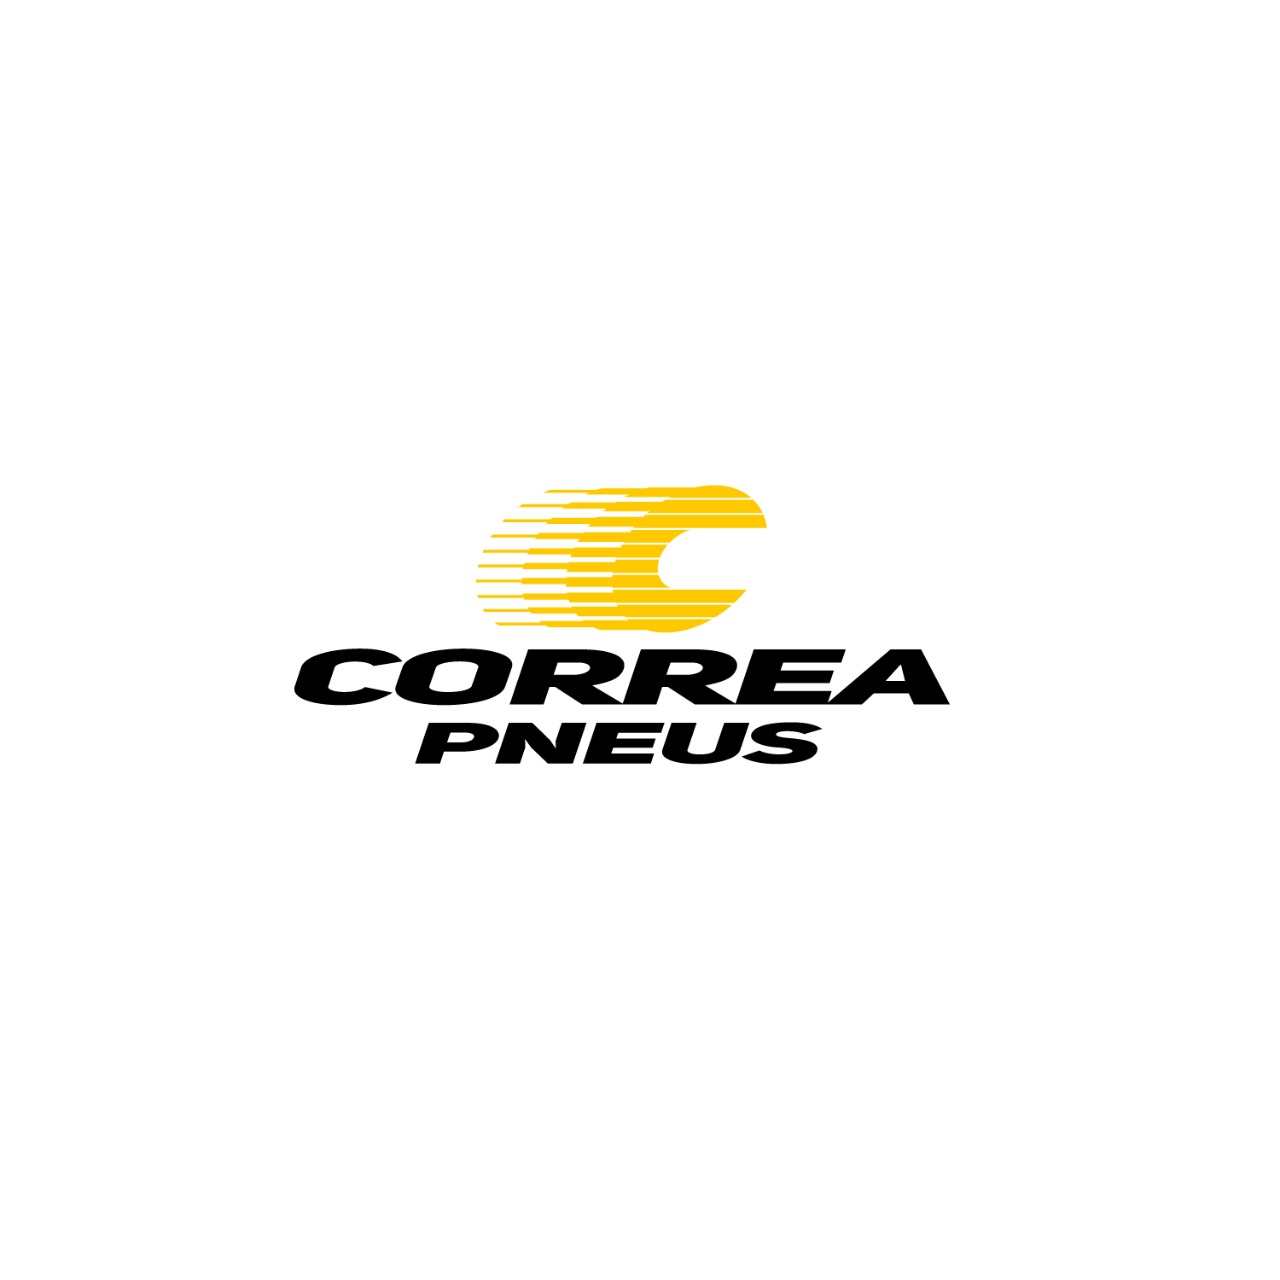 Correa Pneus